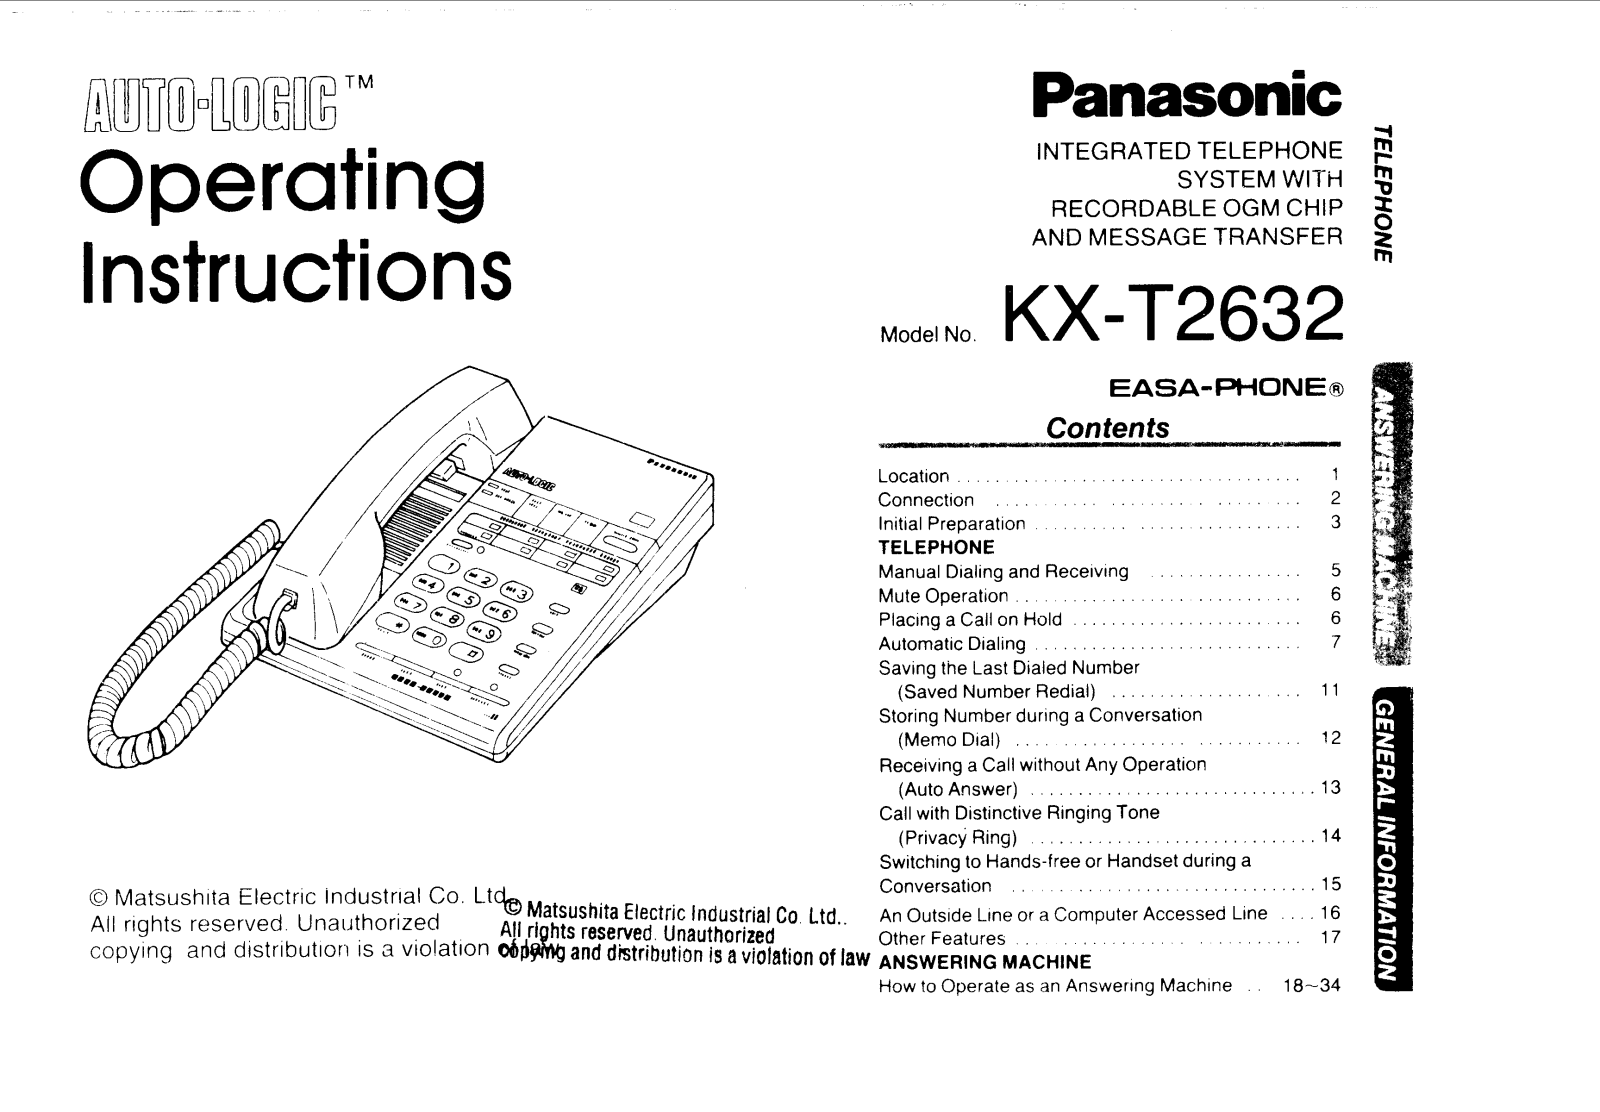 Panasonic kx-t2632 Operation Manual